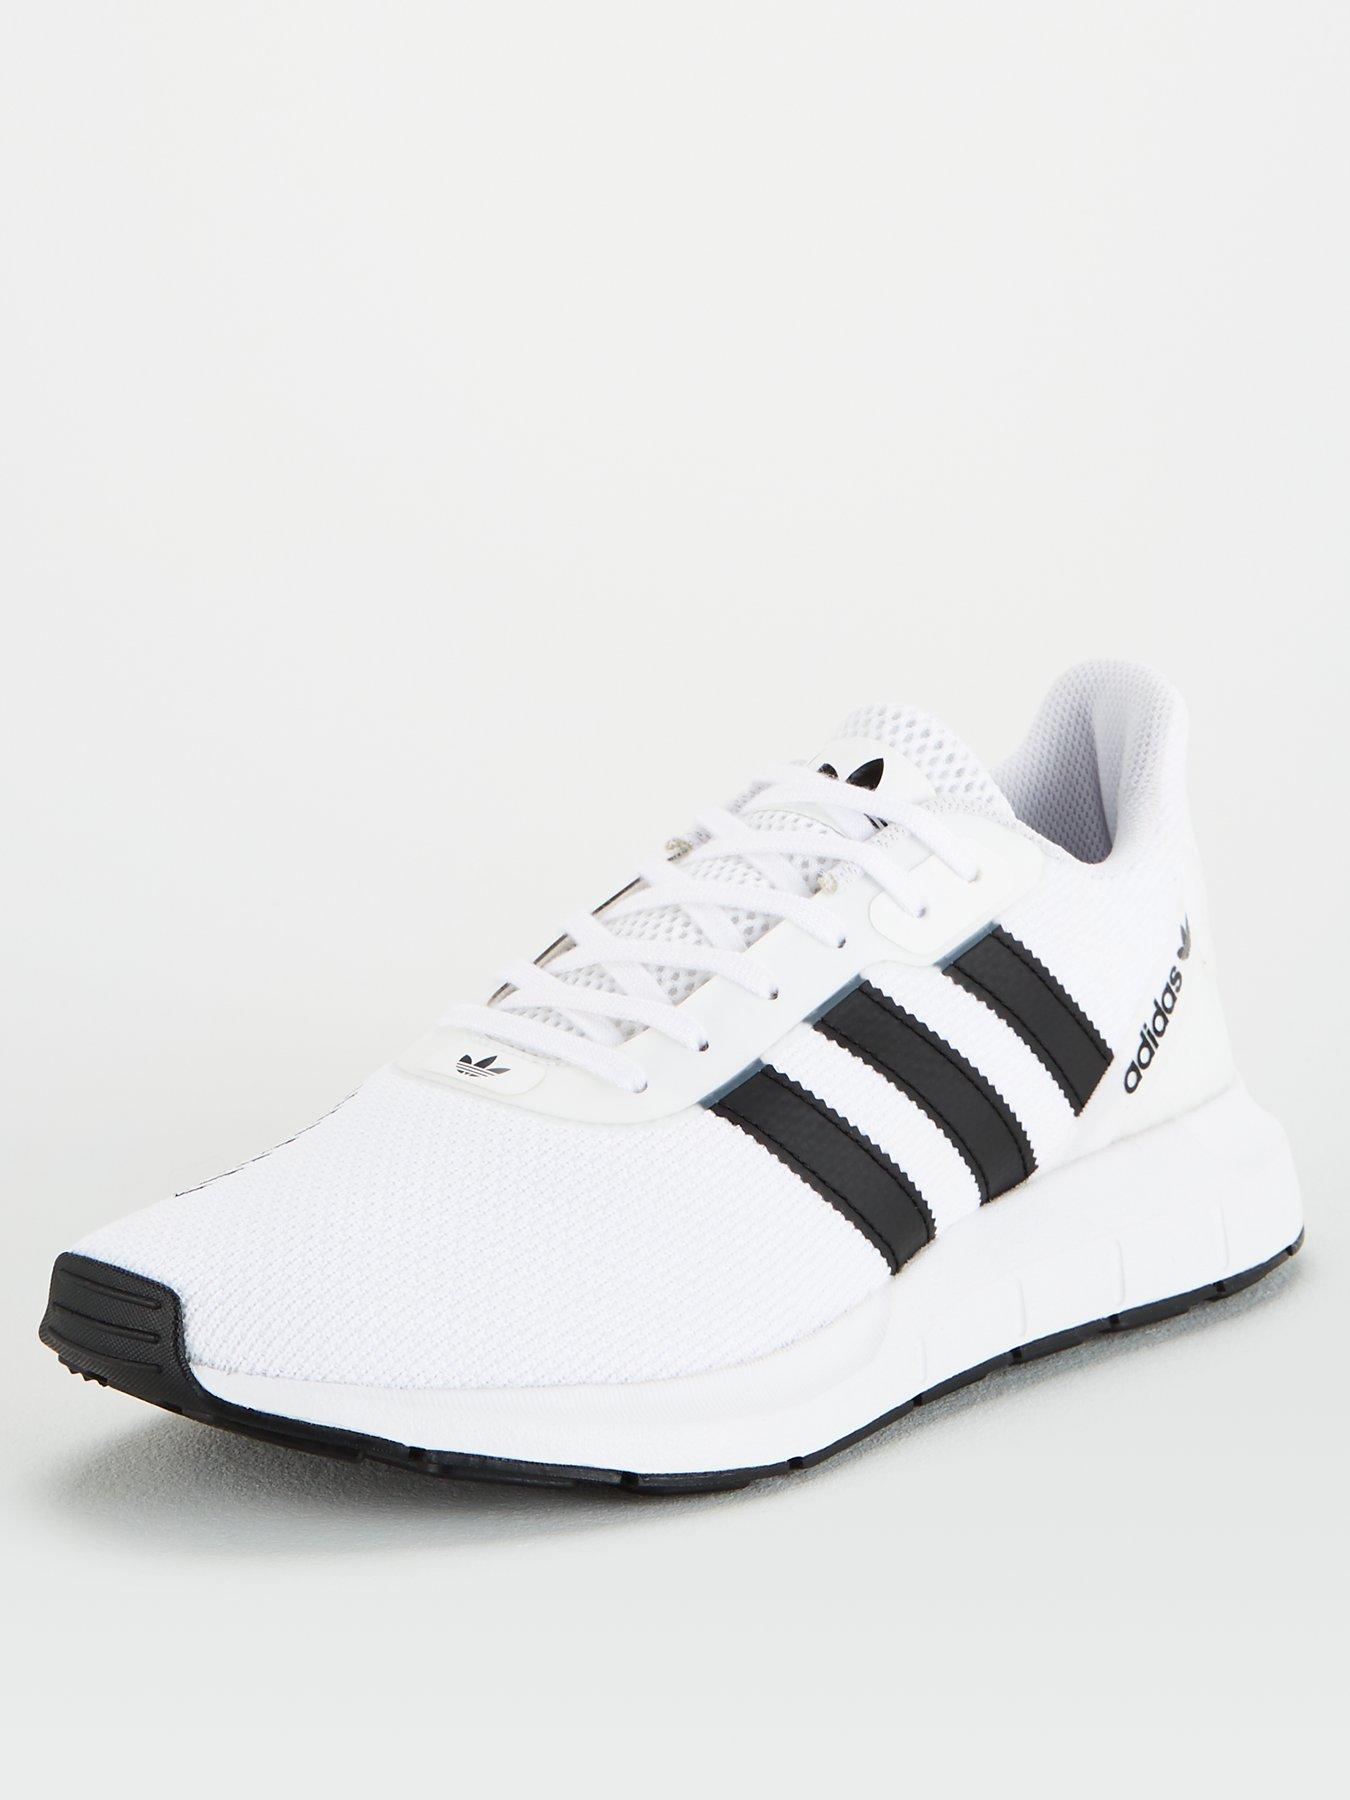 white and black swift run adidas